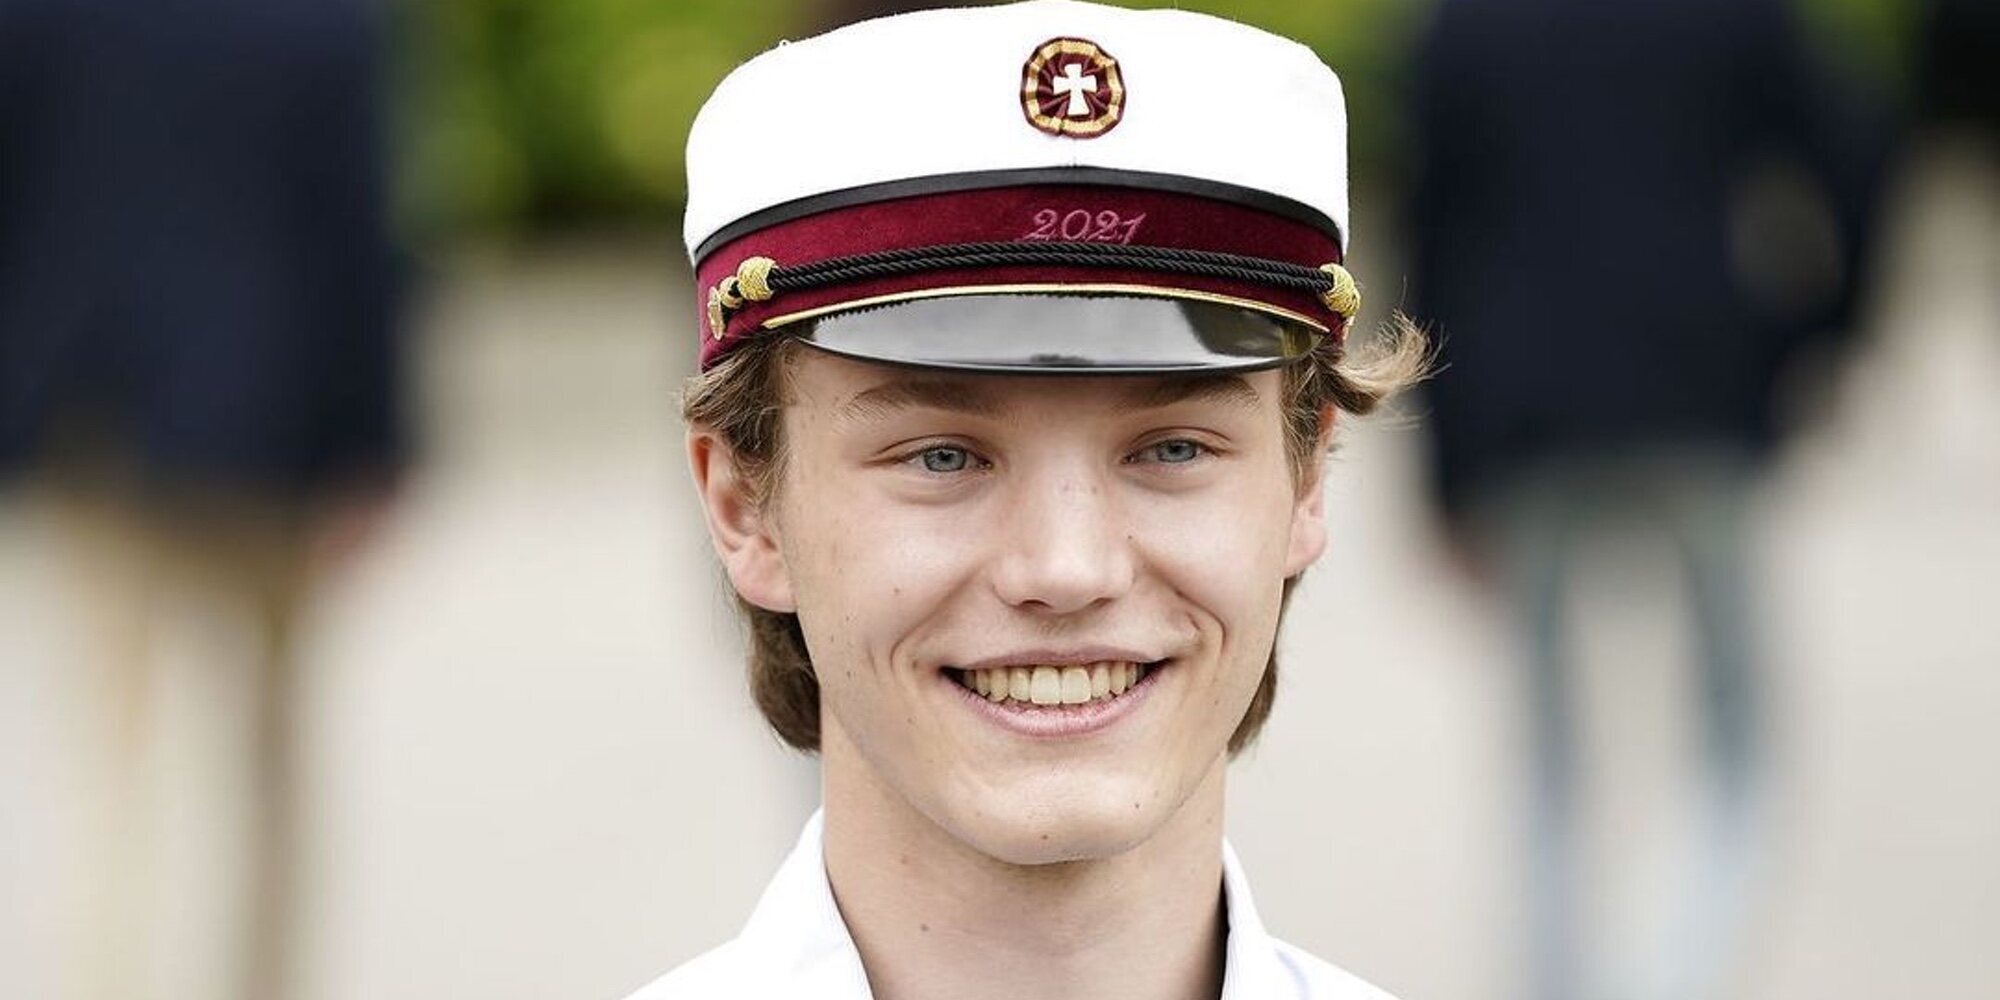 Félix de Dinamarca celebra su graduación con la alegría del regreso de Joaquín de Dinamarca desde París